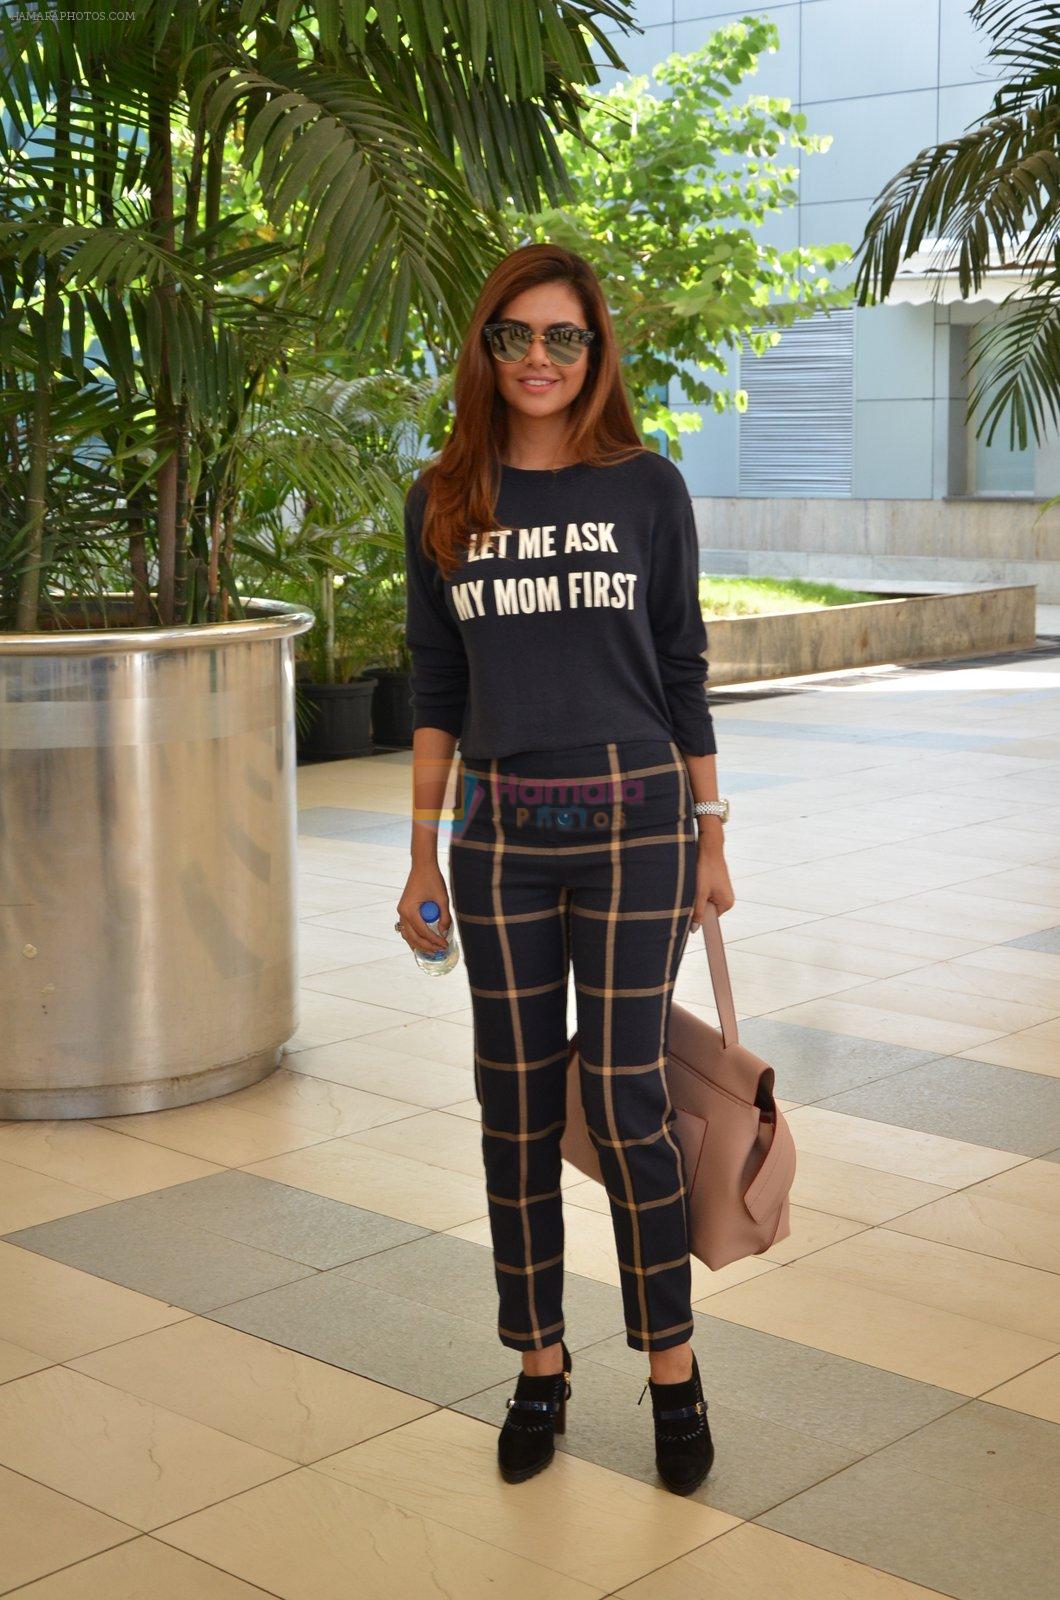 Esha Gupta snapped at airport on 16th Nov 2015